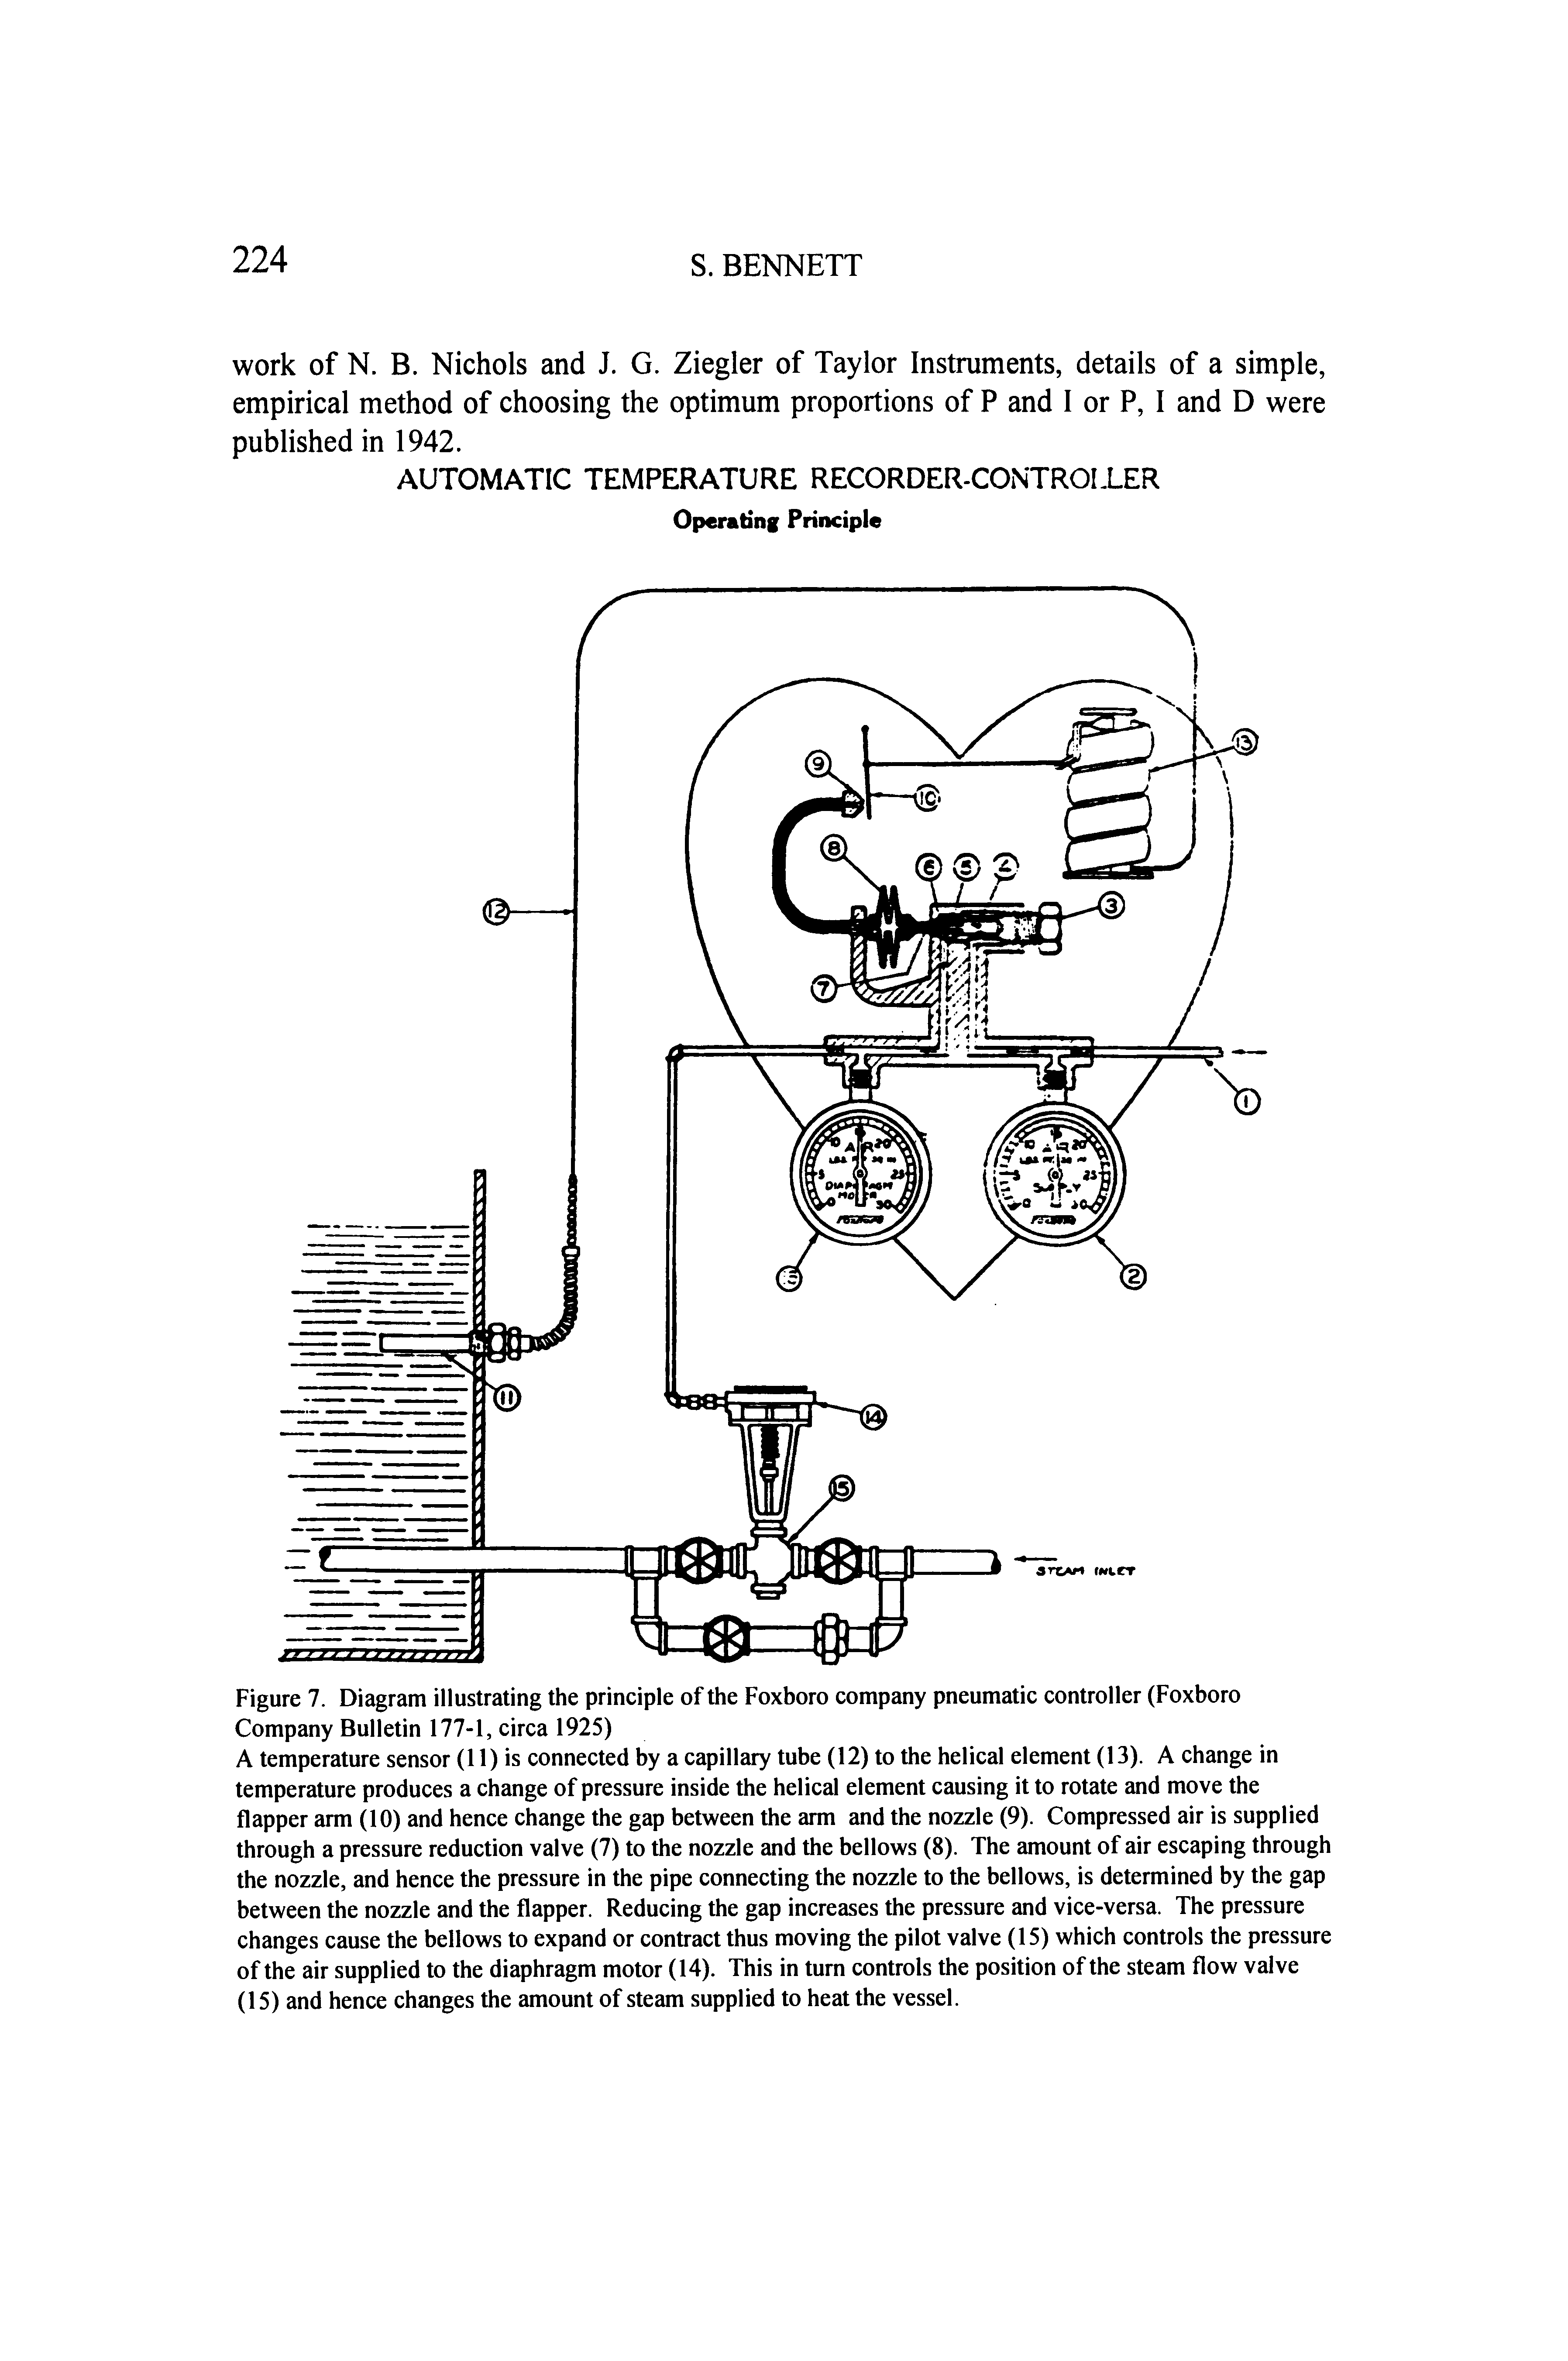 Figure 7. Diagram illustrating the principle of the Foxboro company pneumatic controller (Foxboro Company Bulletin 177-1, circa 1925)...